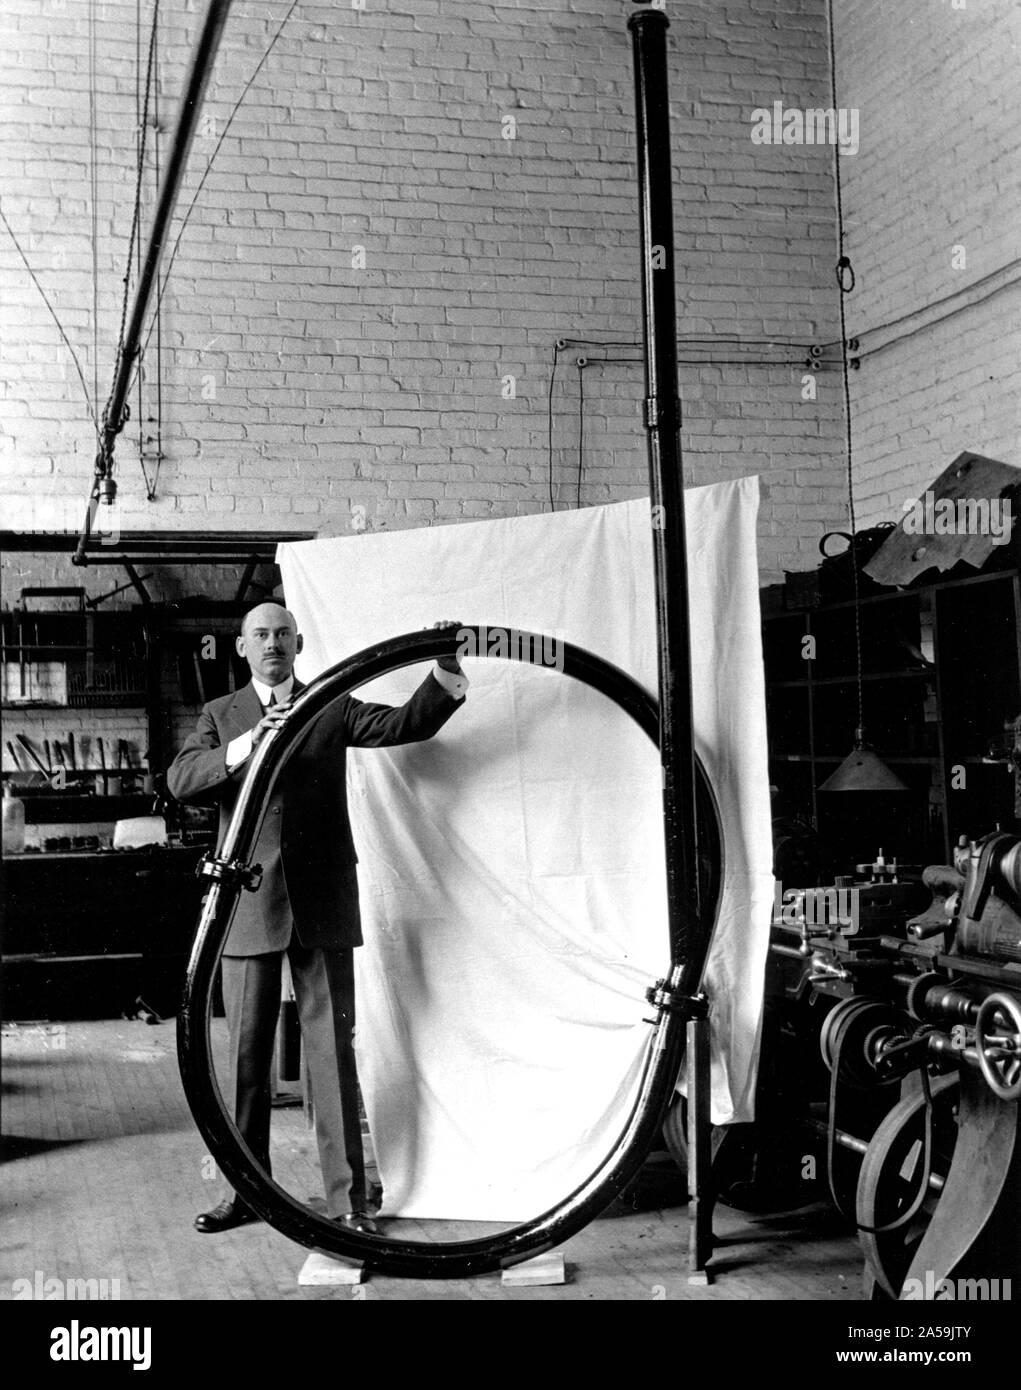 Robert H. Goddard con tubo de vacío aparato que fue construida en 1916 para investigar la eficacia de cohetes. Foto de stock